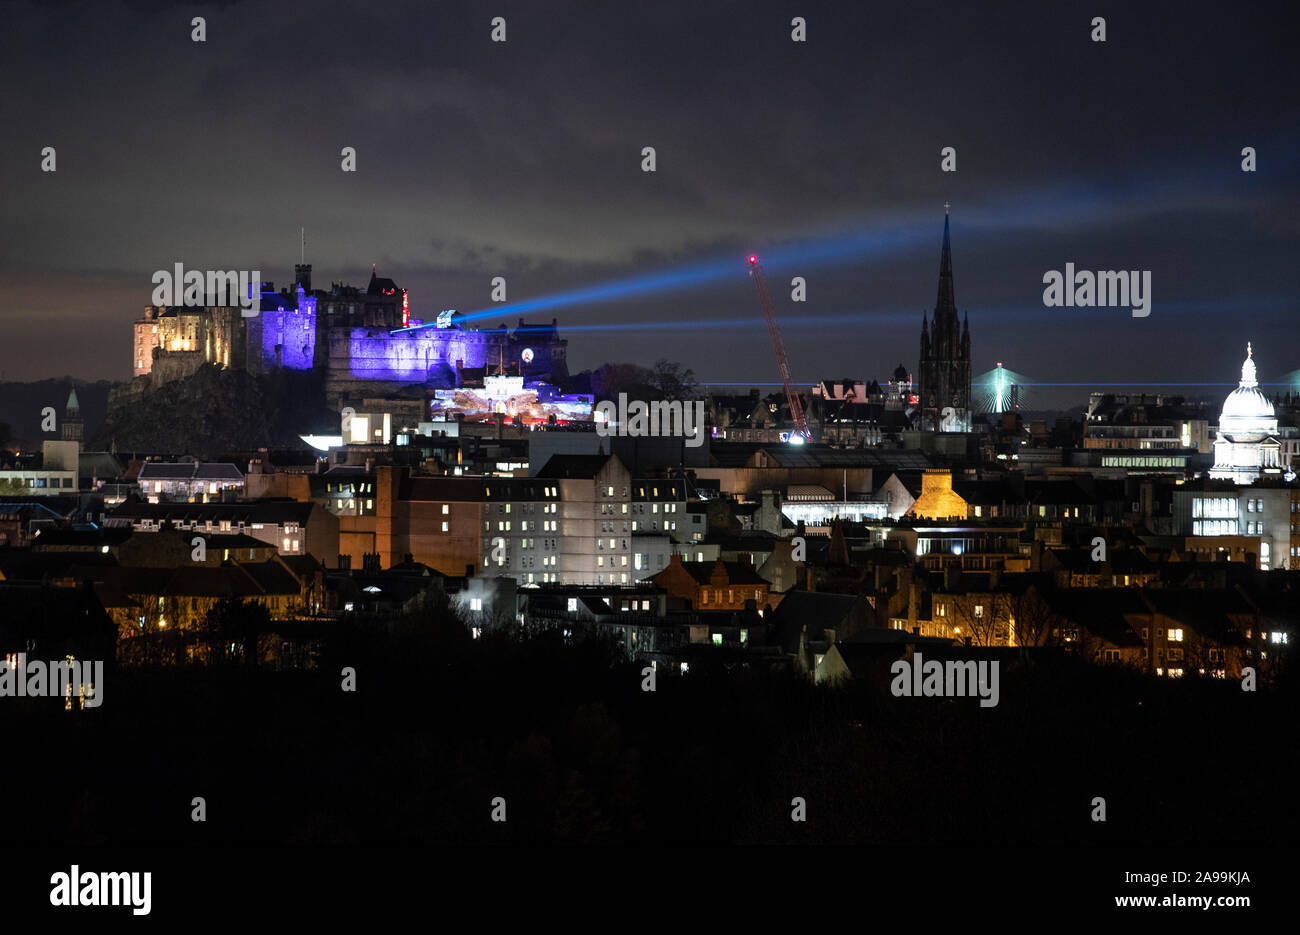 Die "Schloss des Lichts" Winter Festival Start auf das Edinburgh Castle. Nach Stunden Veranstaltung wird das 900 Jahre alte Schloss durch eine Reihe von Projektionen, bunte Lichter und Laserstrahlen im November und Dezember verwandelt sehen. Stockfoto